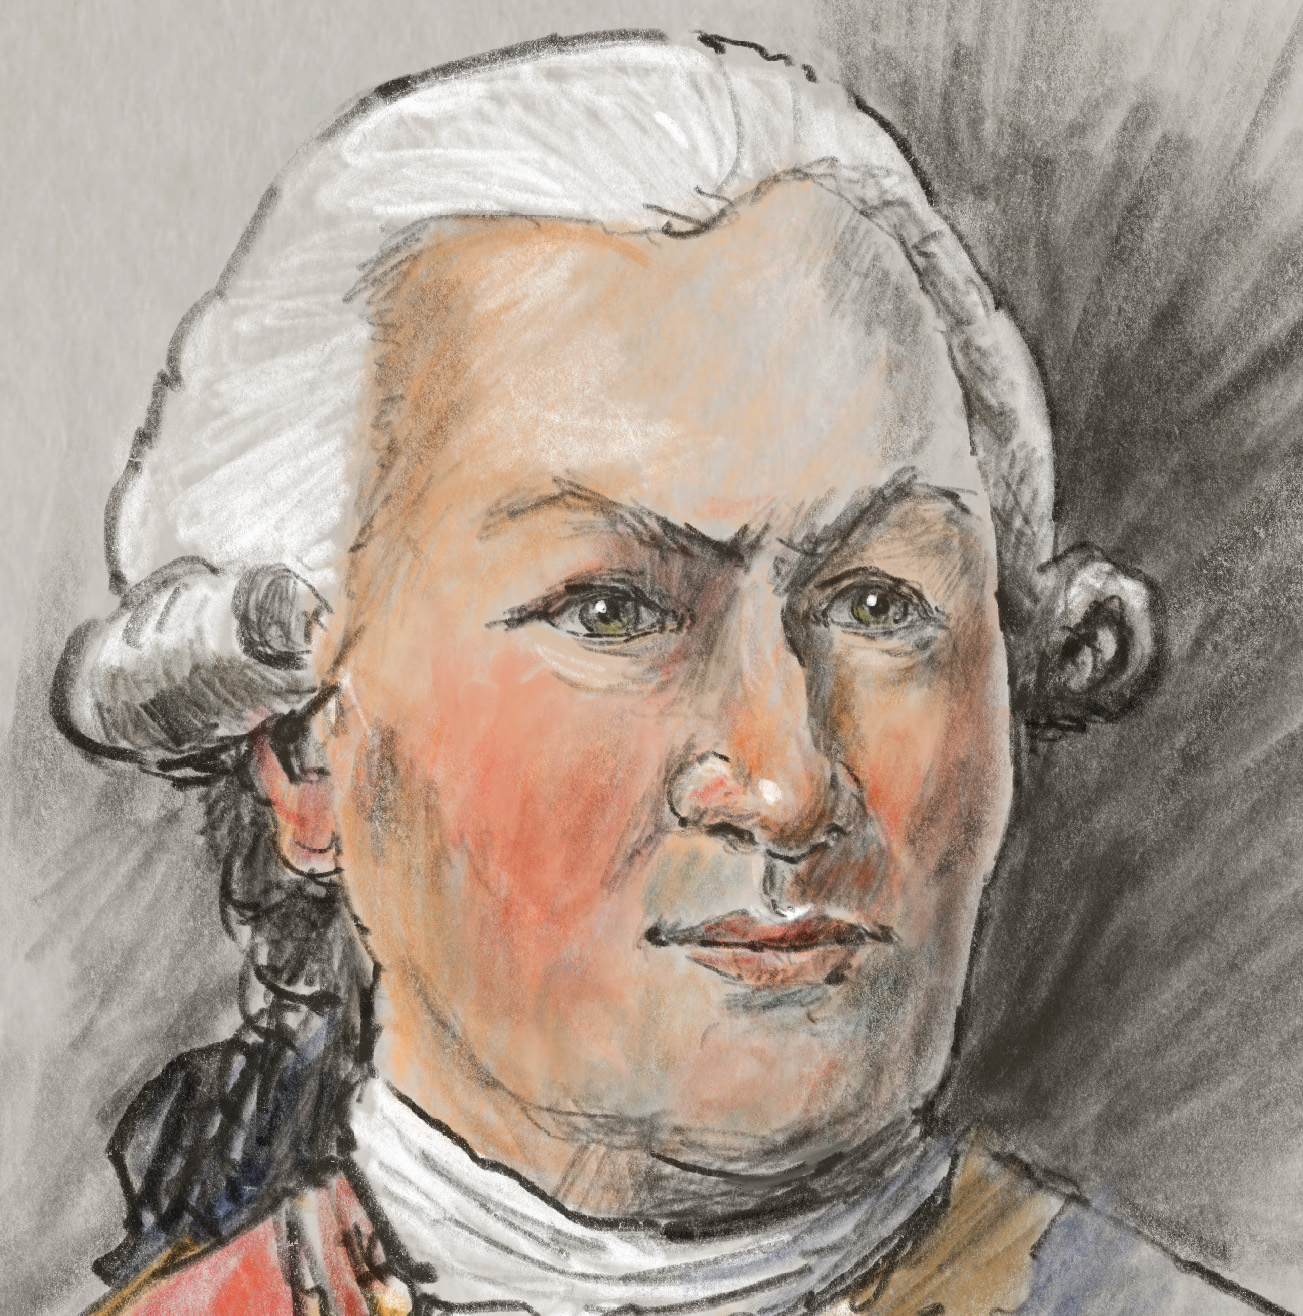 Illustrated portrait drawing of François Joseph Paul de Grasse